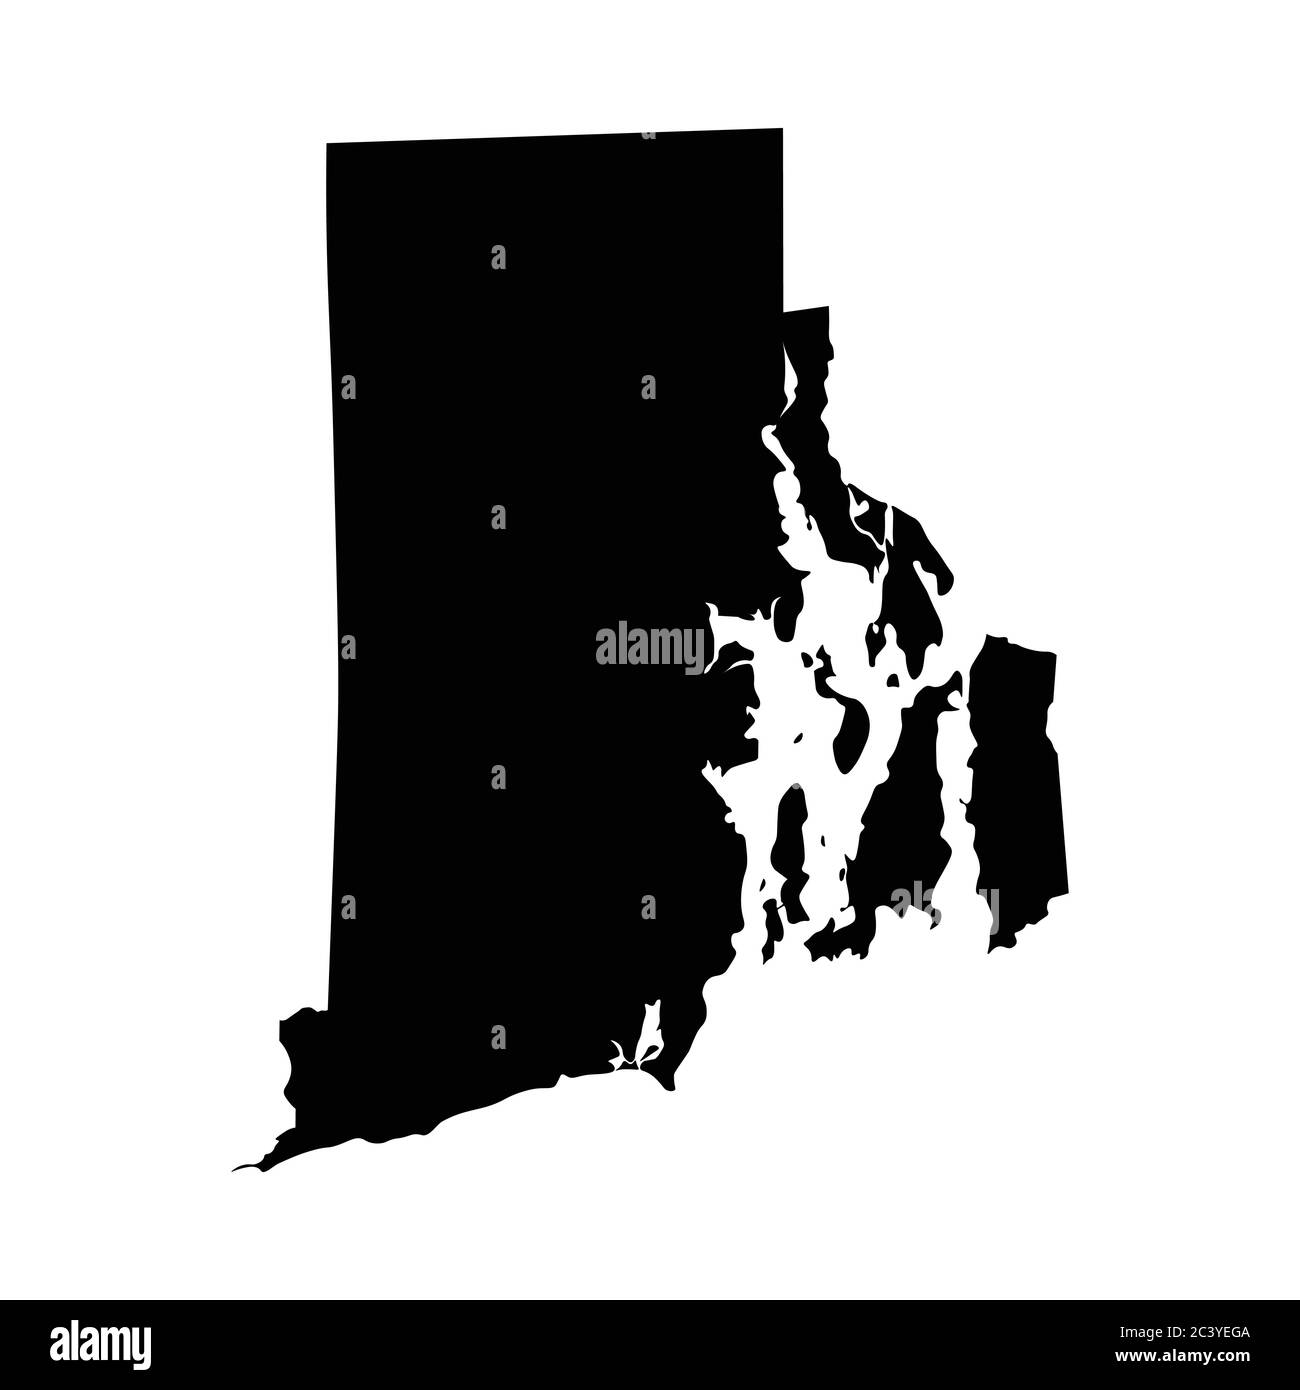 Rhode Island RI State Maps. Schwarze Silhouette einfarbige Karte isoliert auf weißem Hintergrund. EPS-Vektor Stock Vektor